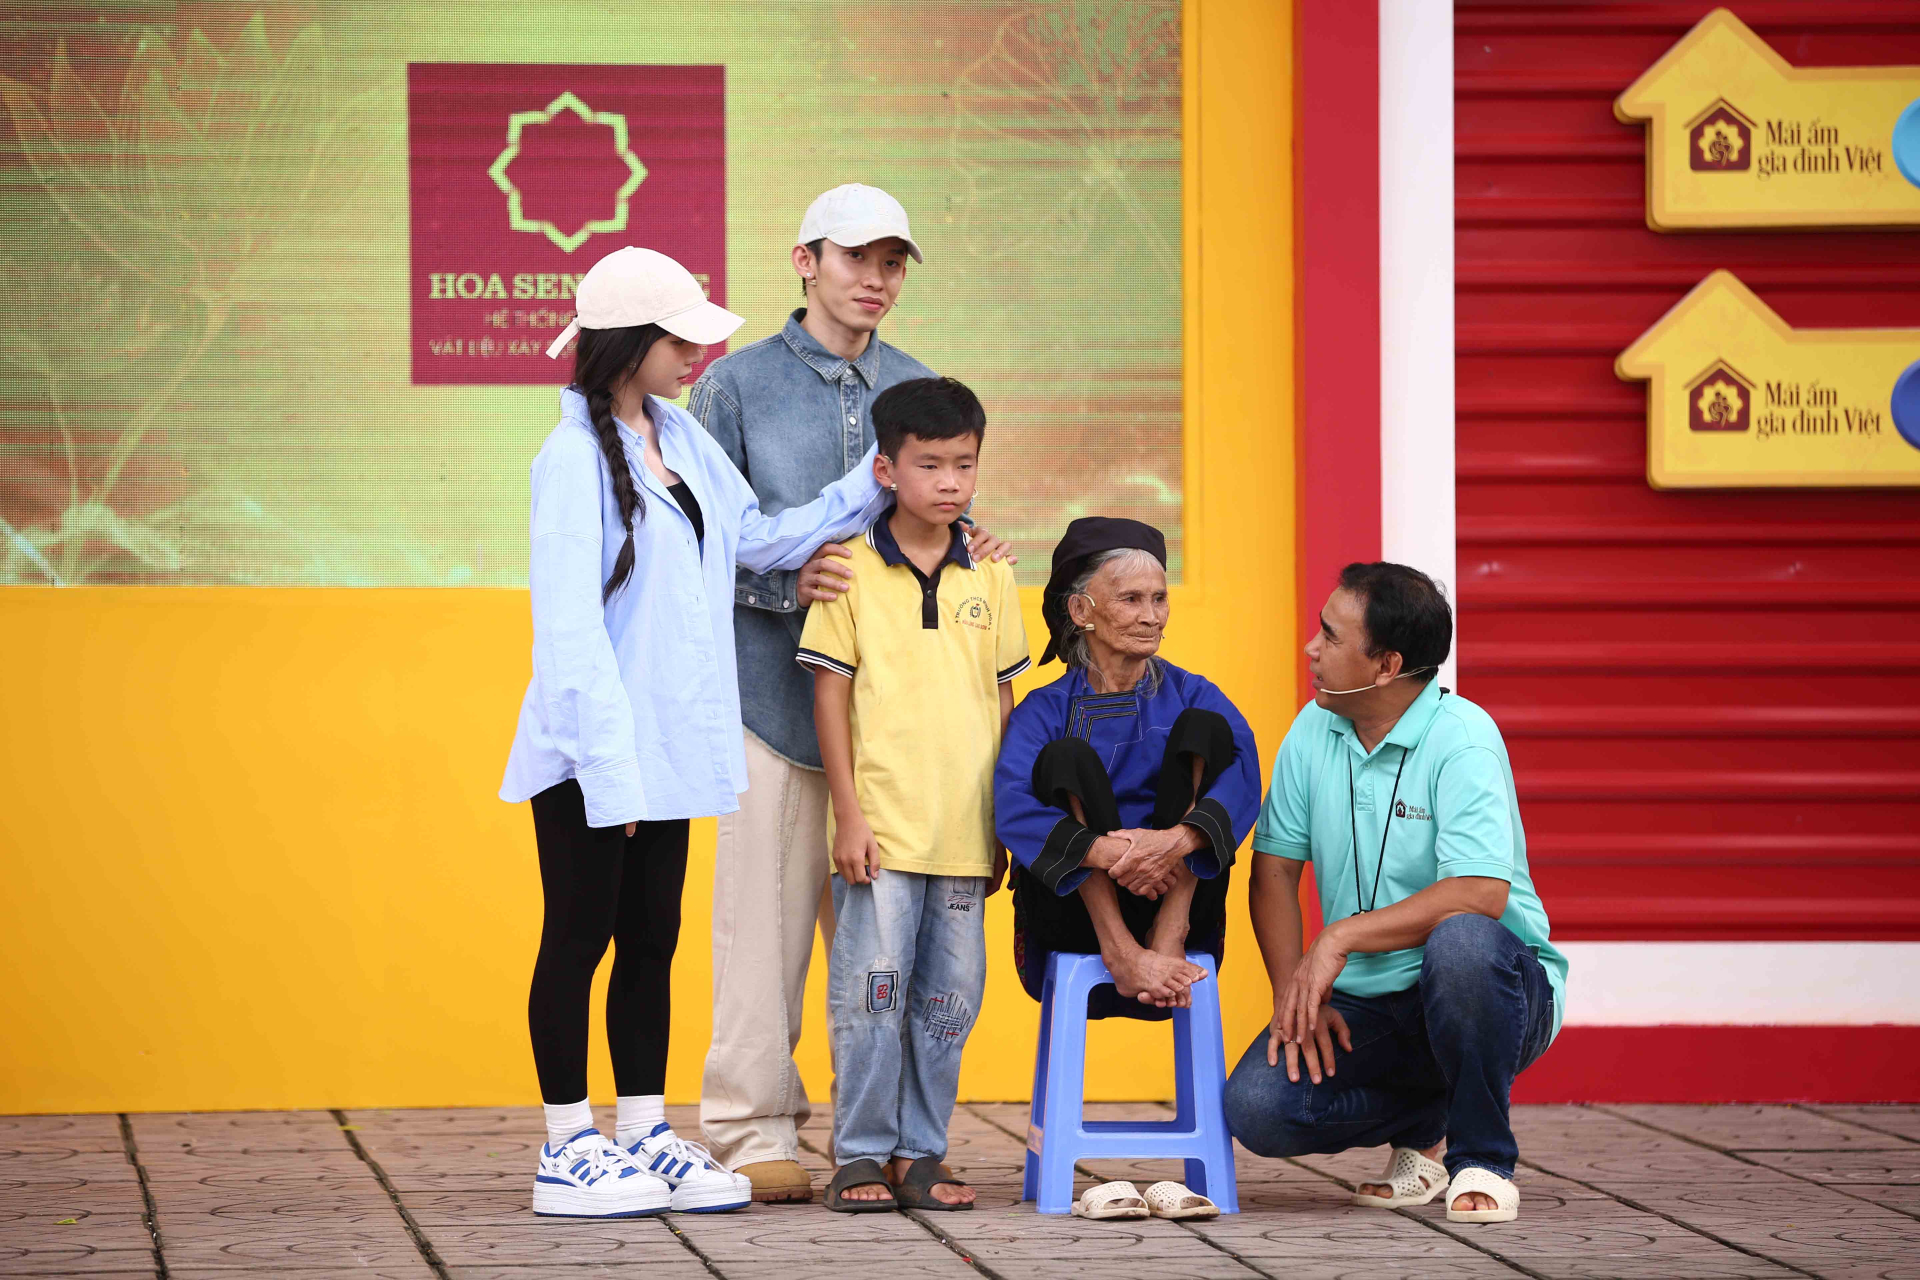 MC Quyền Linh, ca sĩ Kay Trần và ca sĩ LyLy xúc động khi chứng kiến hoàn cảnh của các em nhỏ mồ côi - ảnh 2